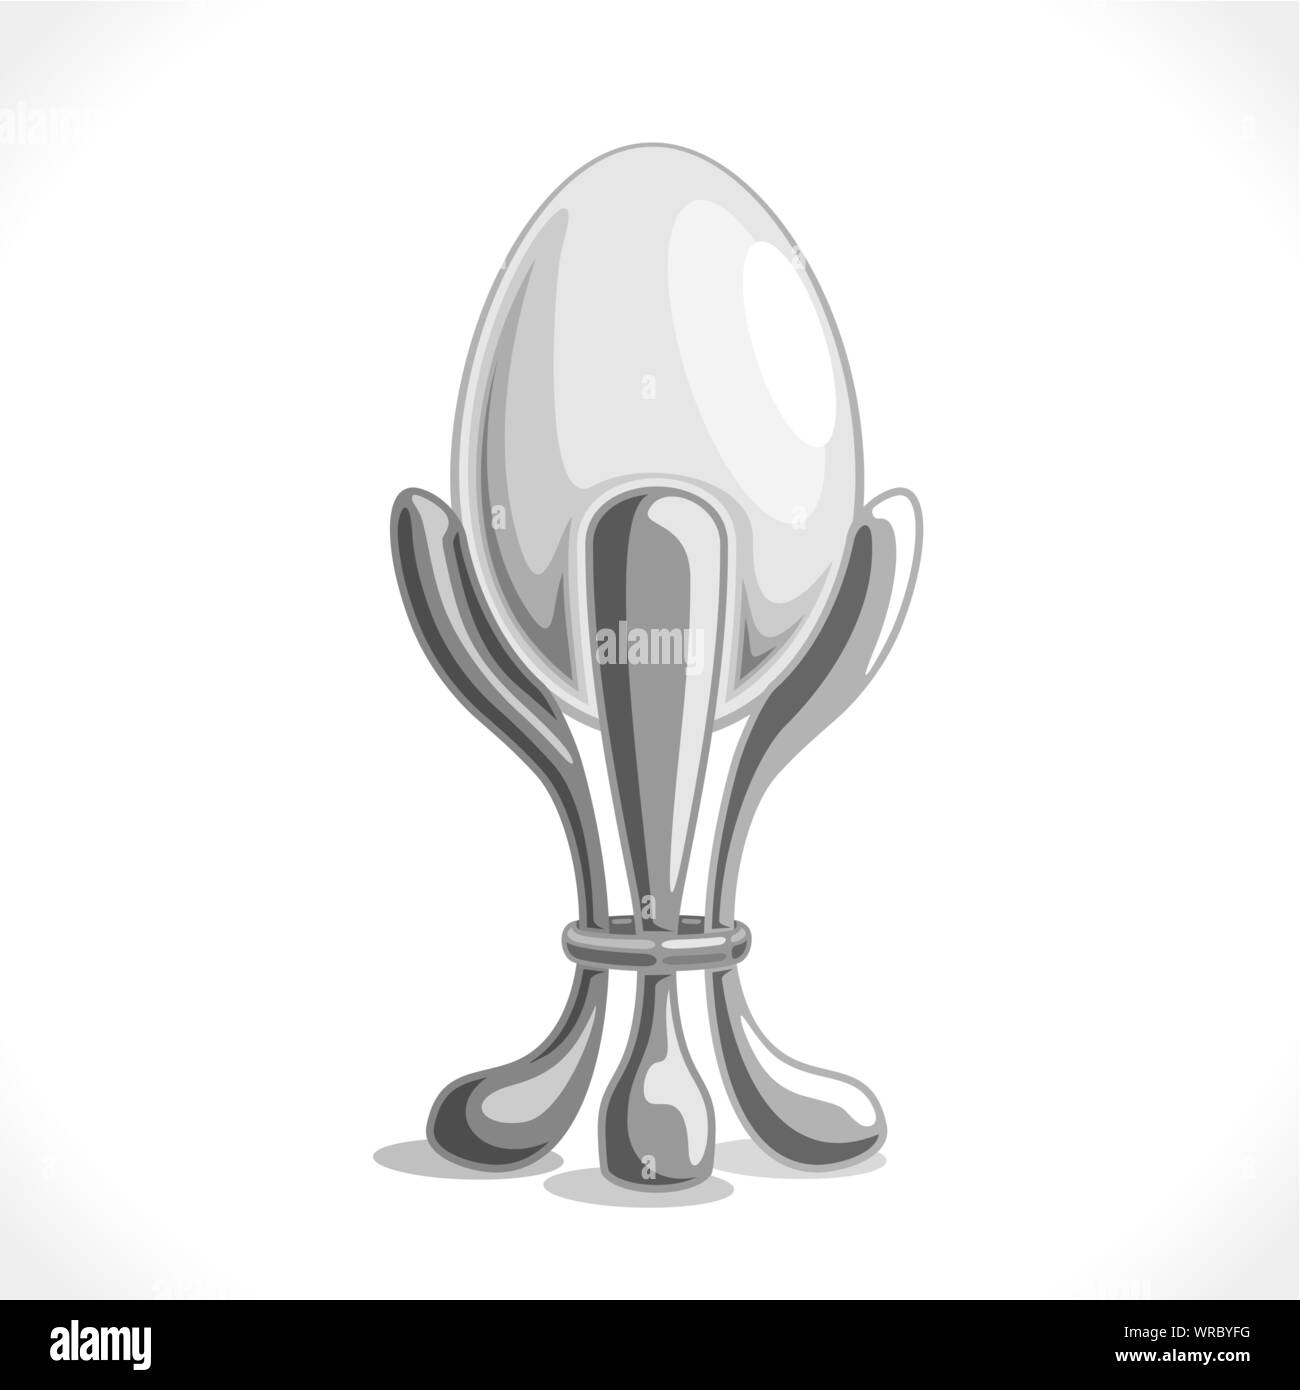 Illustrazione Vettoriale di uova sode nel supporto, bianco cotto pollo uovo in metallo decorativo cap. Illustrazione Vettoriale